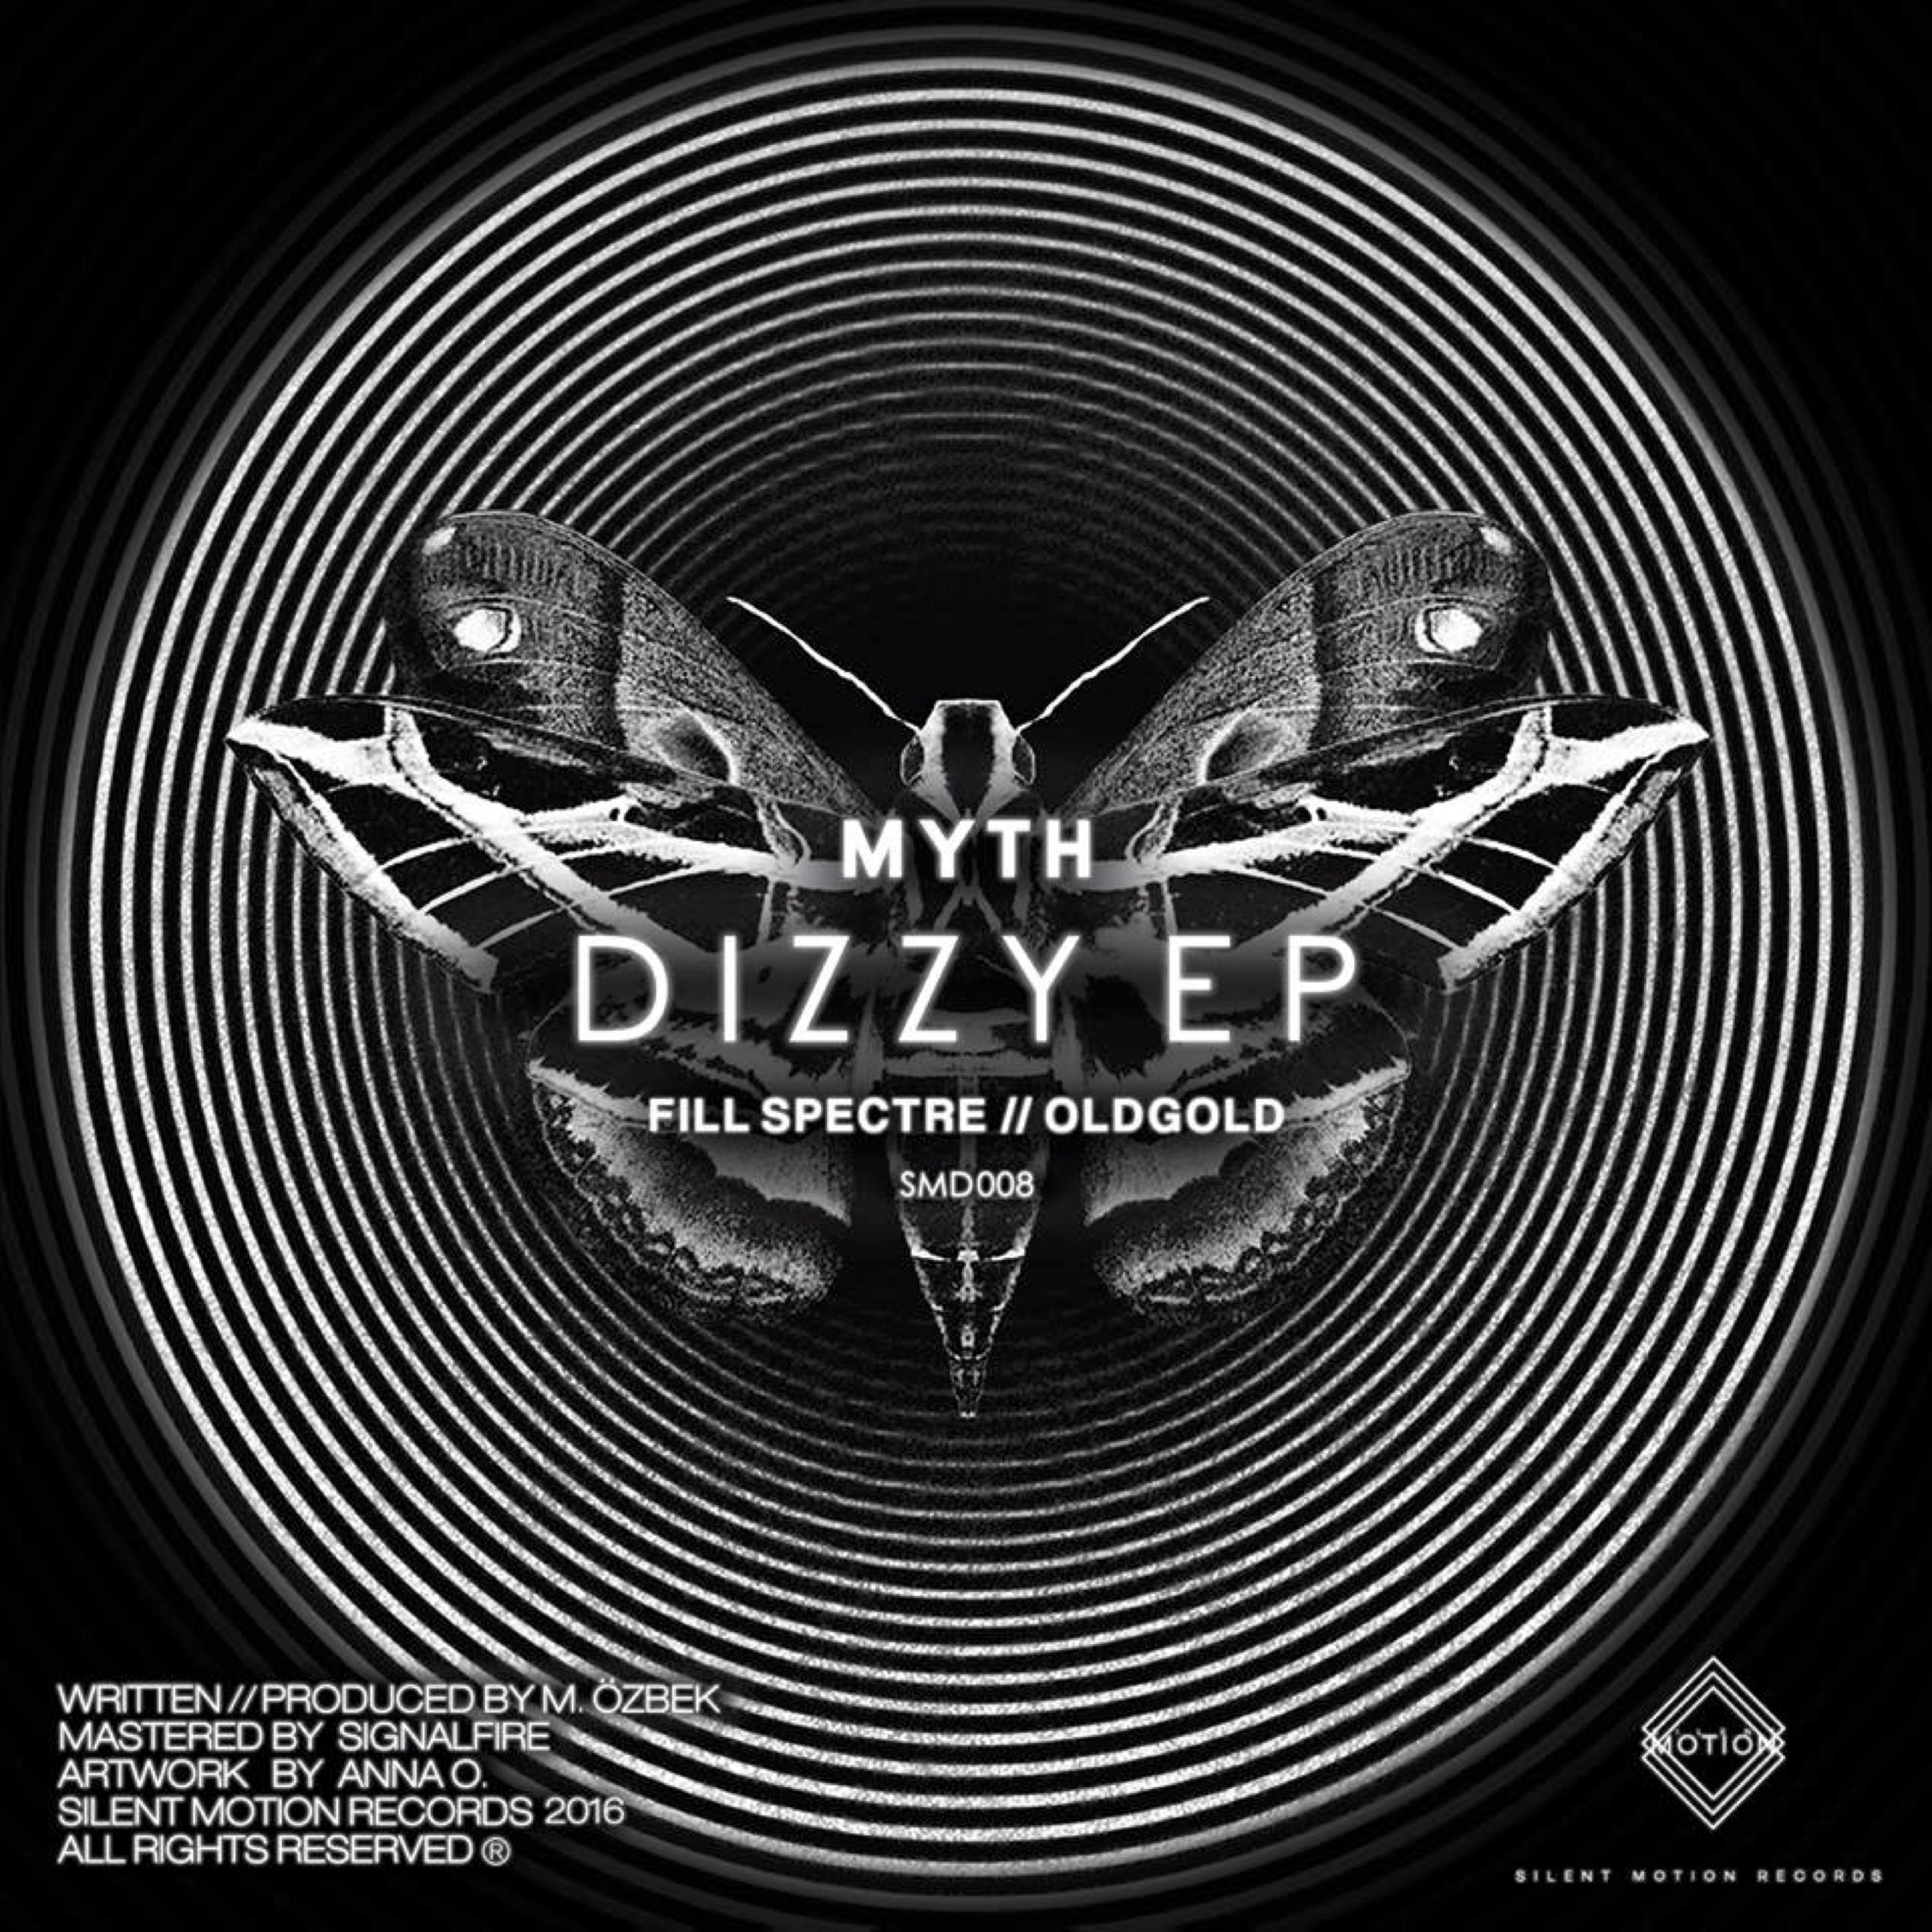 Dizzy EP